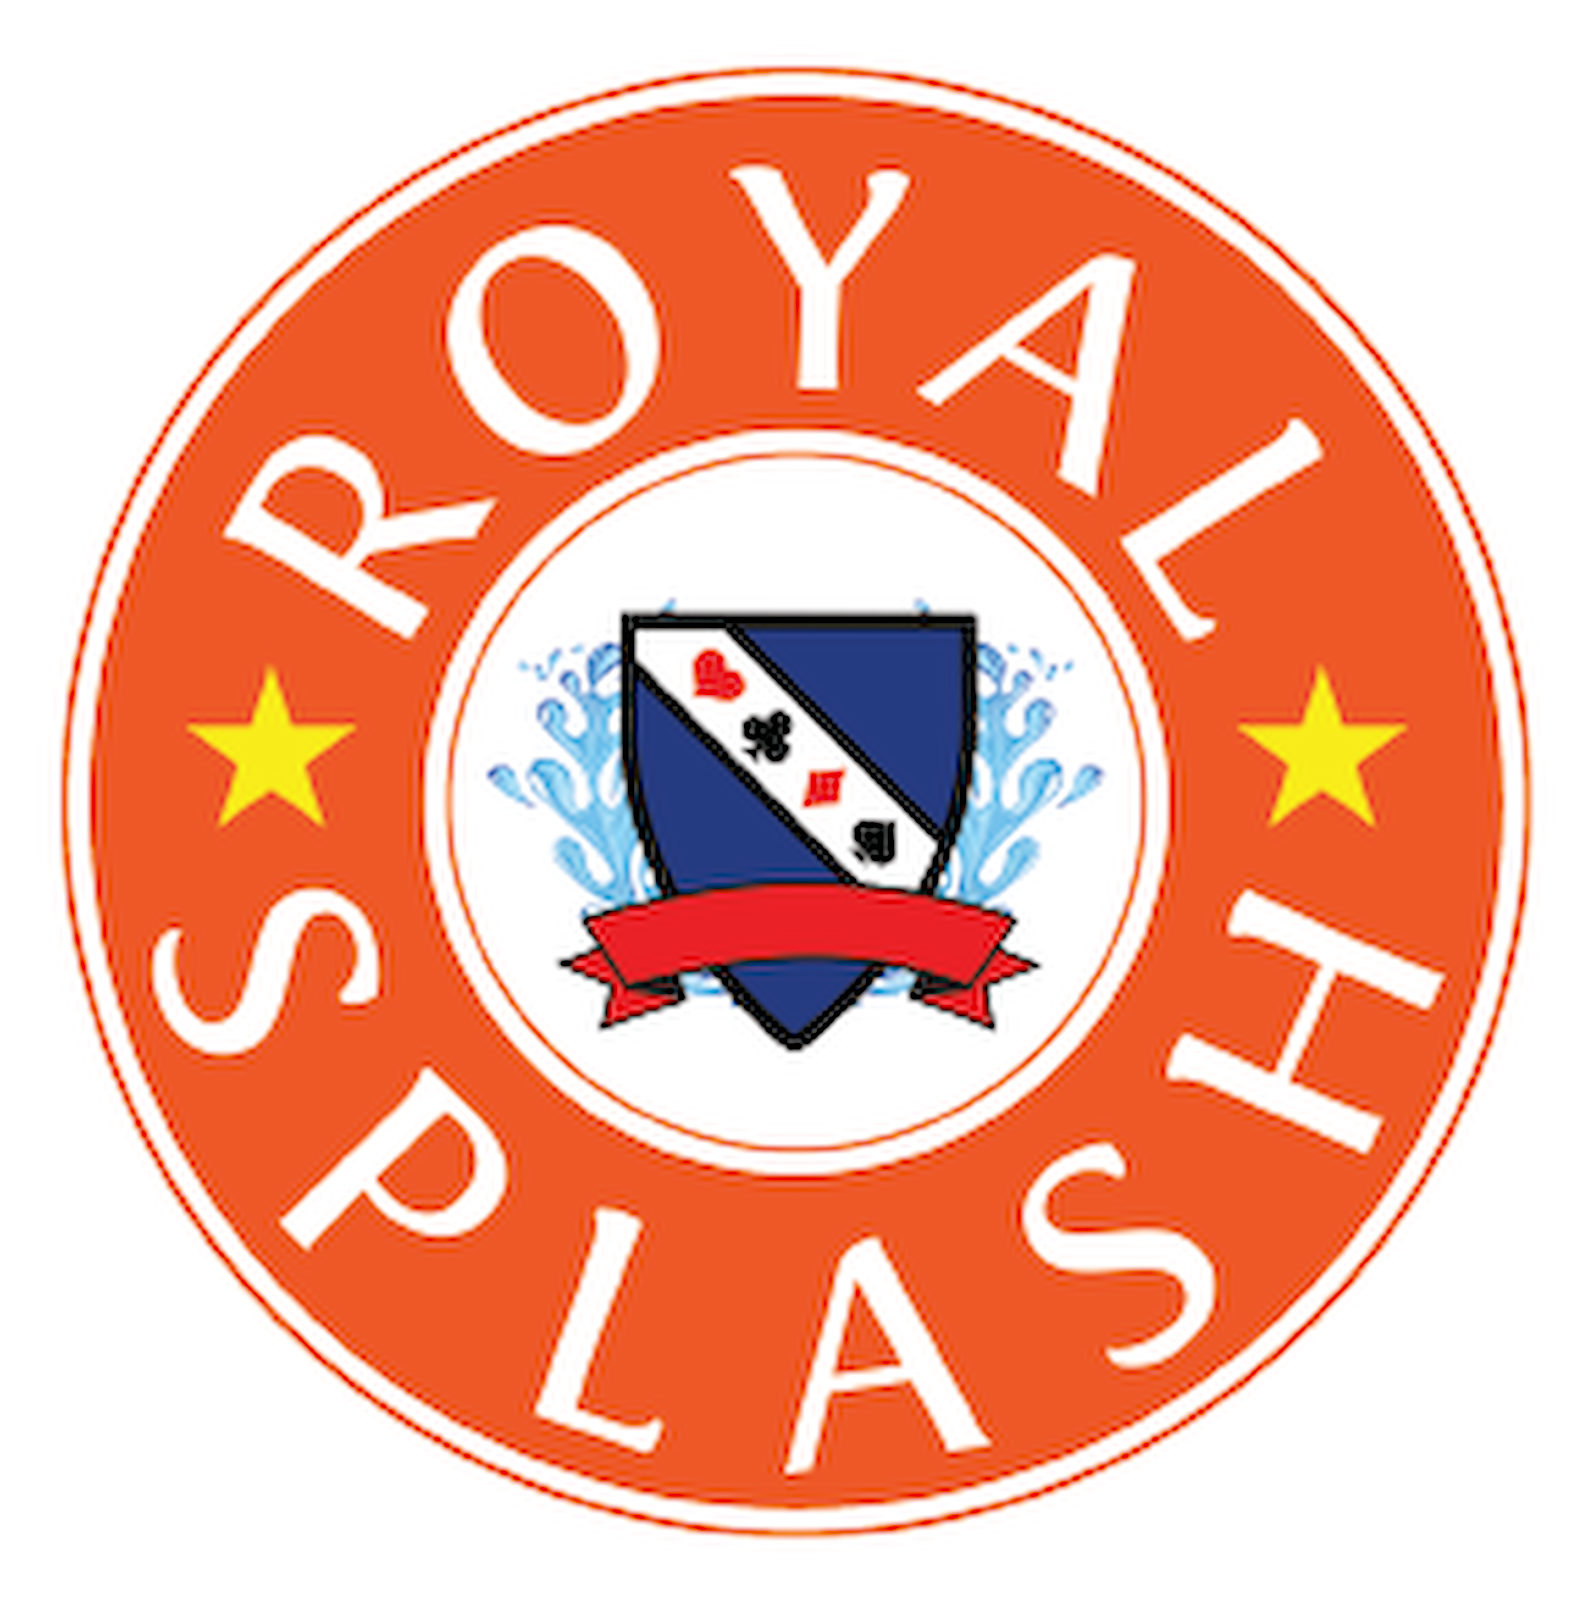 Royal Splash Car Wash